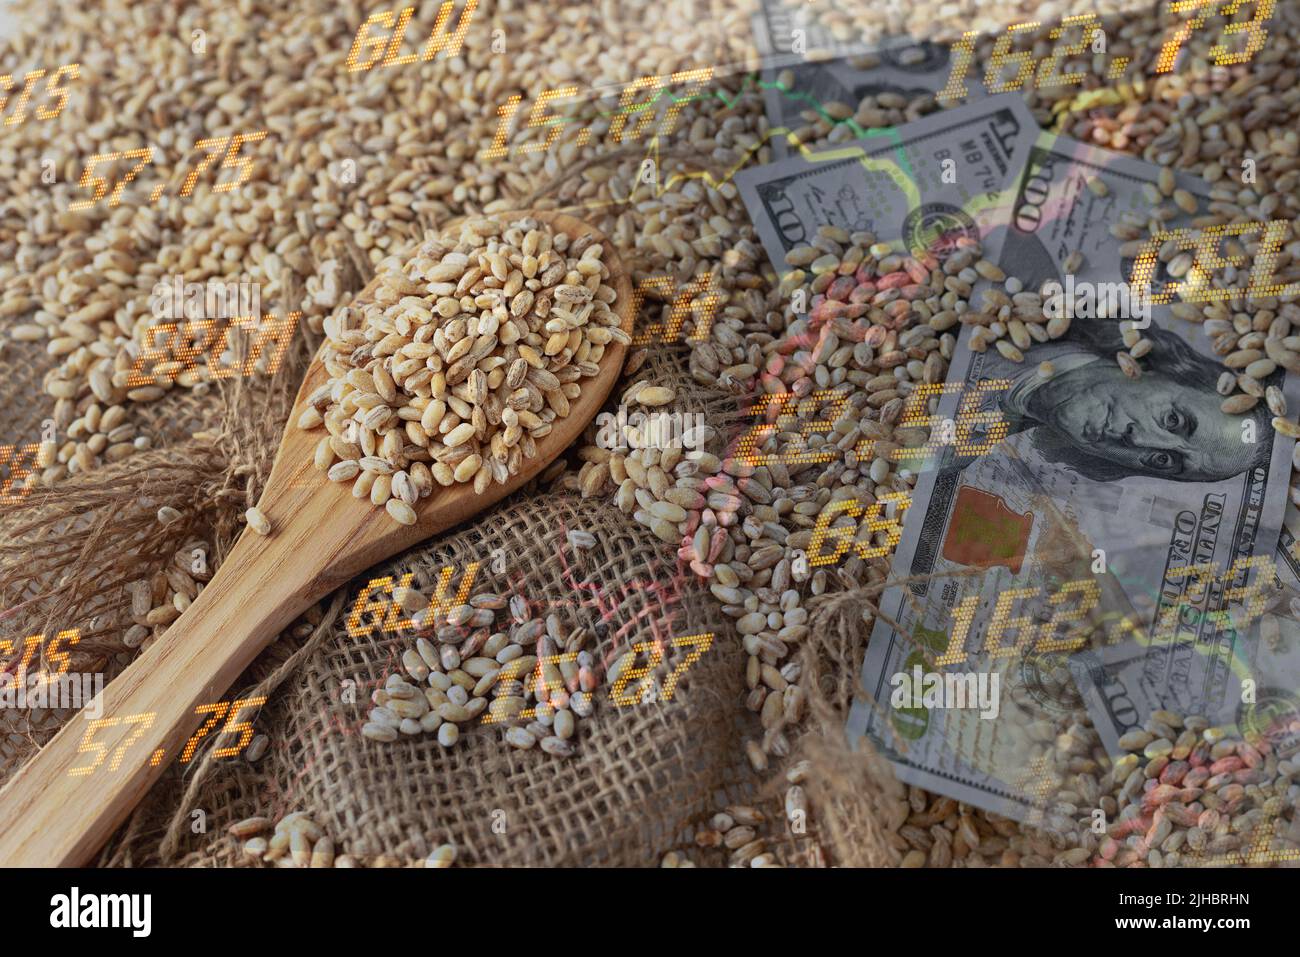 Crise mondiale et européenne des céréales et du blé après l'invasion de l'Ukraine par la Russie. Embargo et sanction pour l'exportation de céréales, alimentation de l'agriculture. Banque D'Images